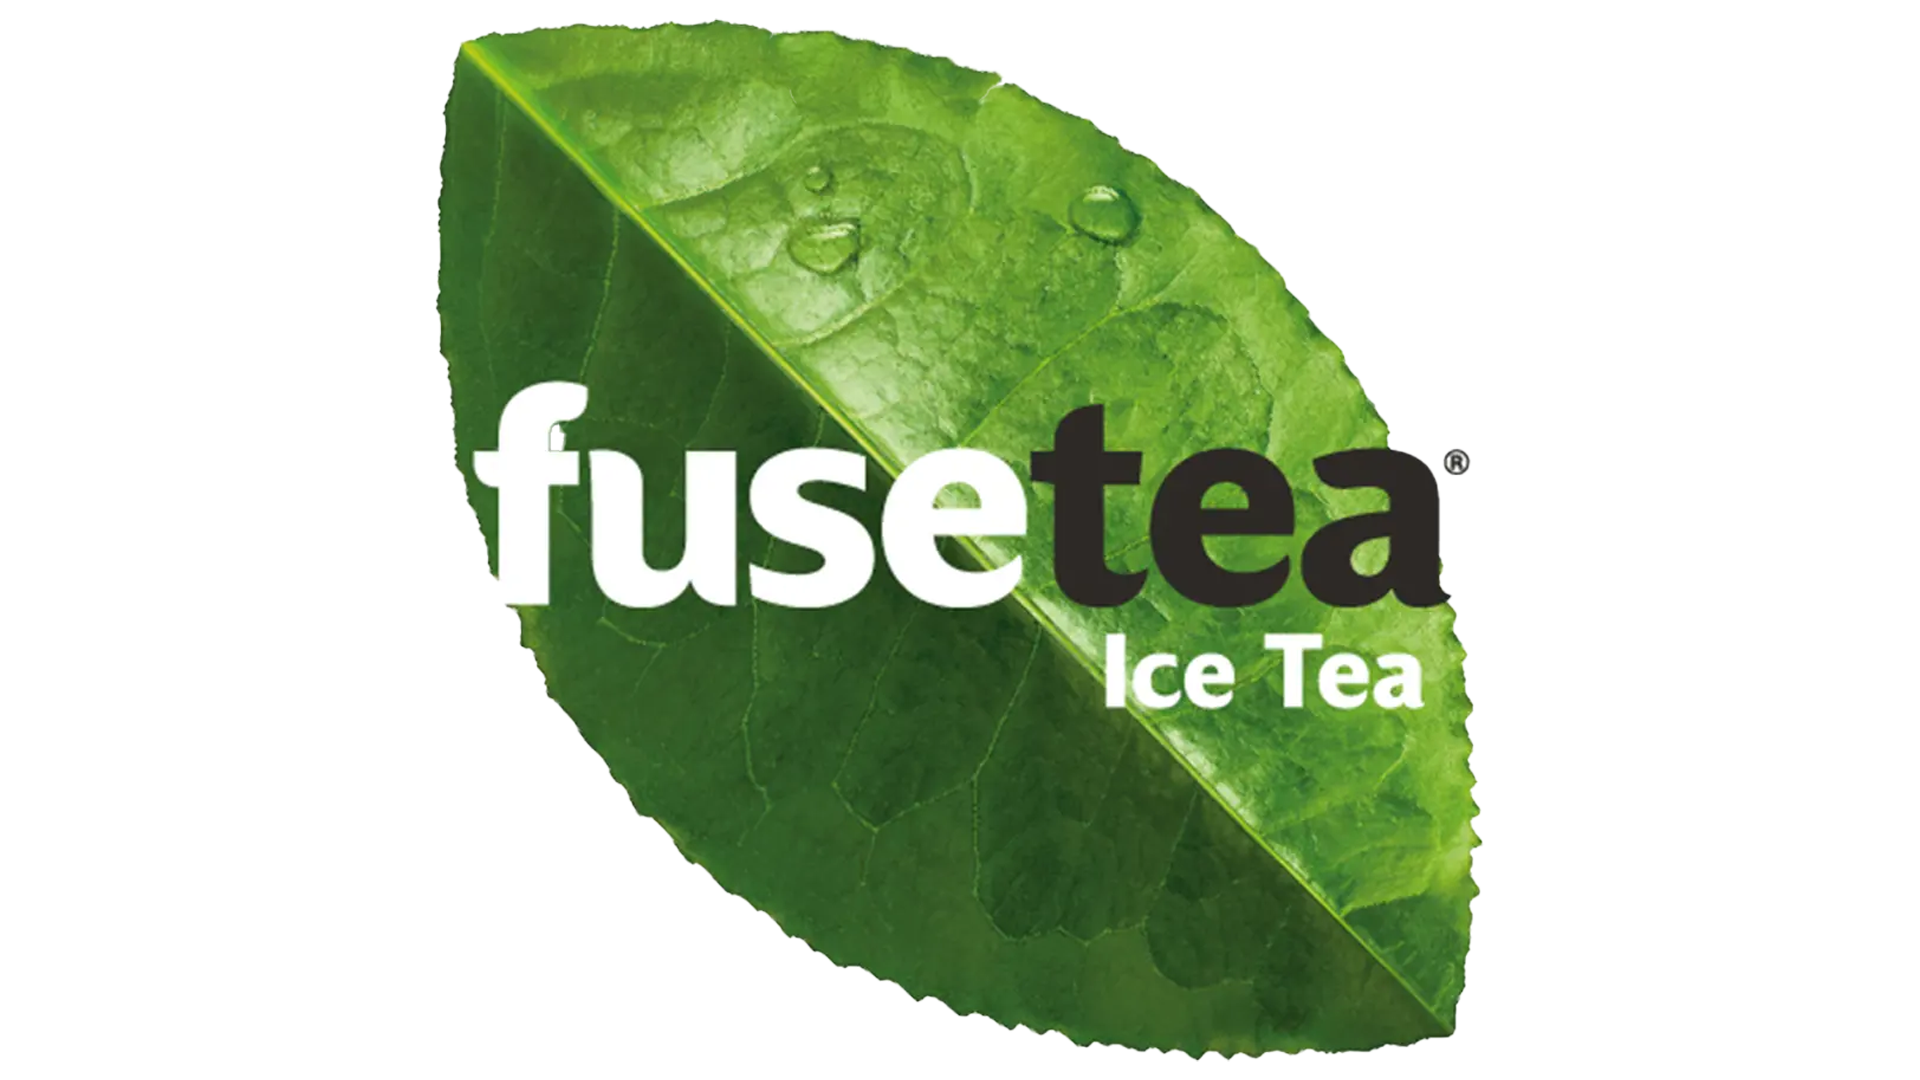 FUSE TEA